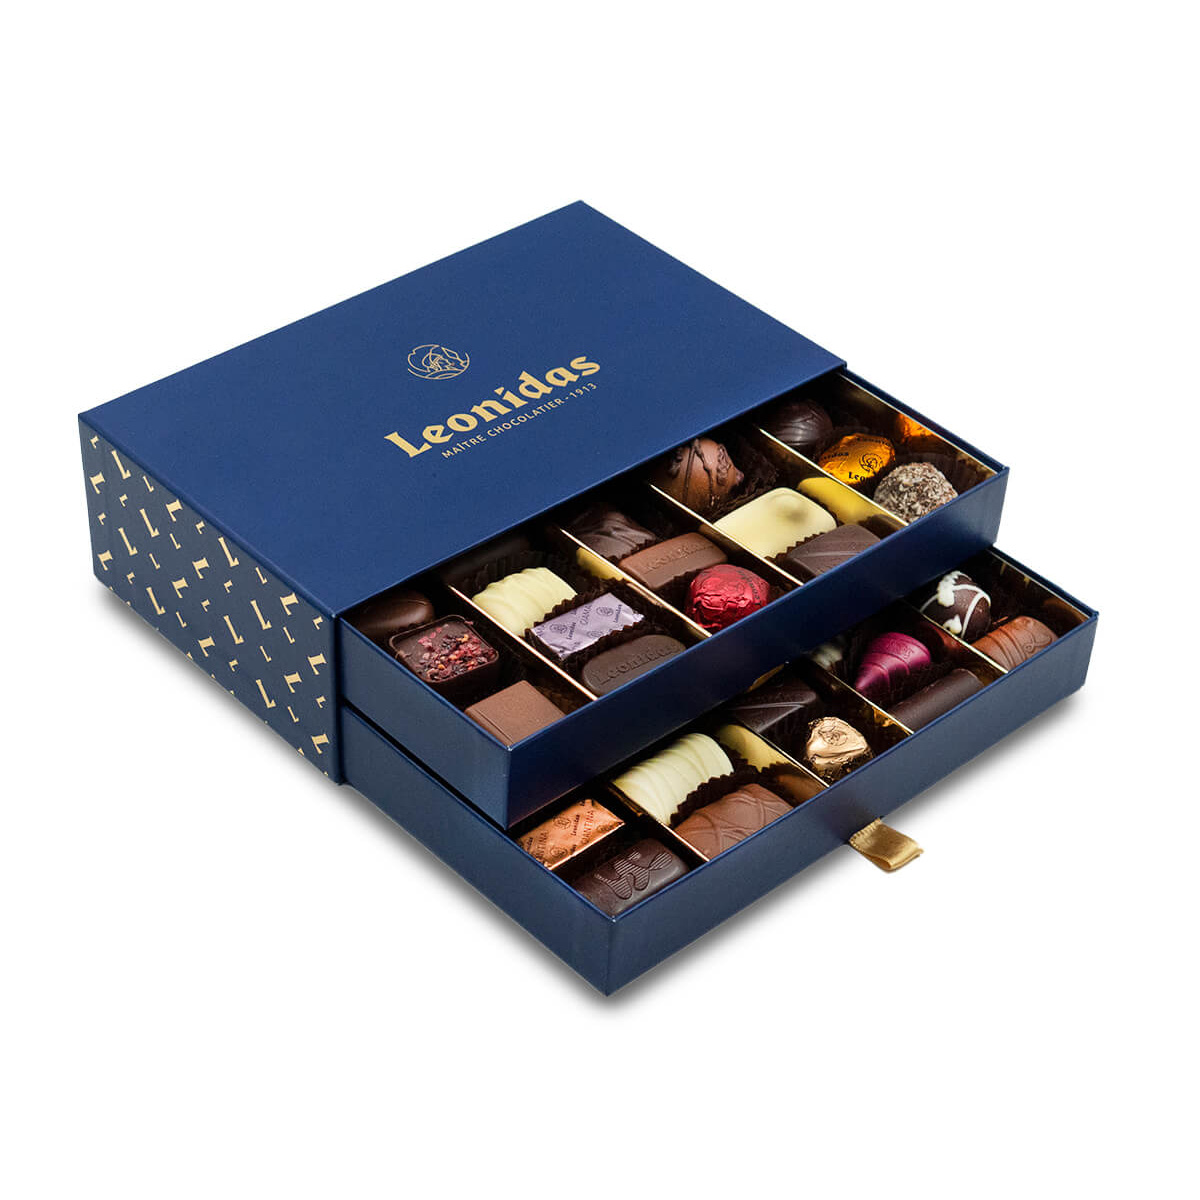 Κουτί drawer box Leonidas με 680g ποικιλία σοκολατάκια